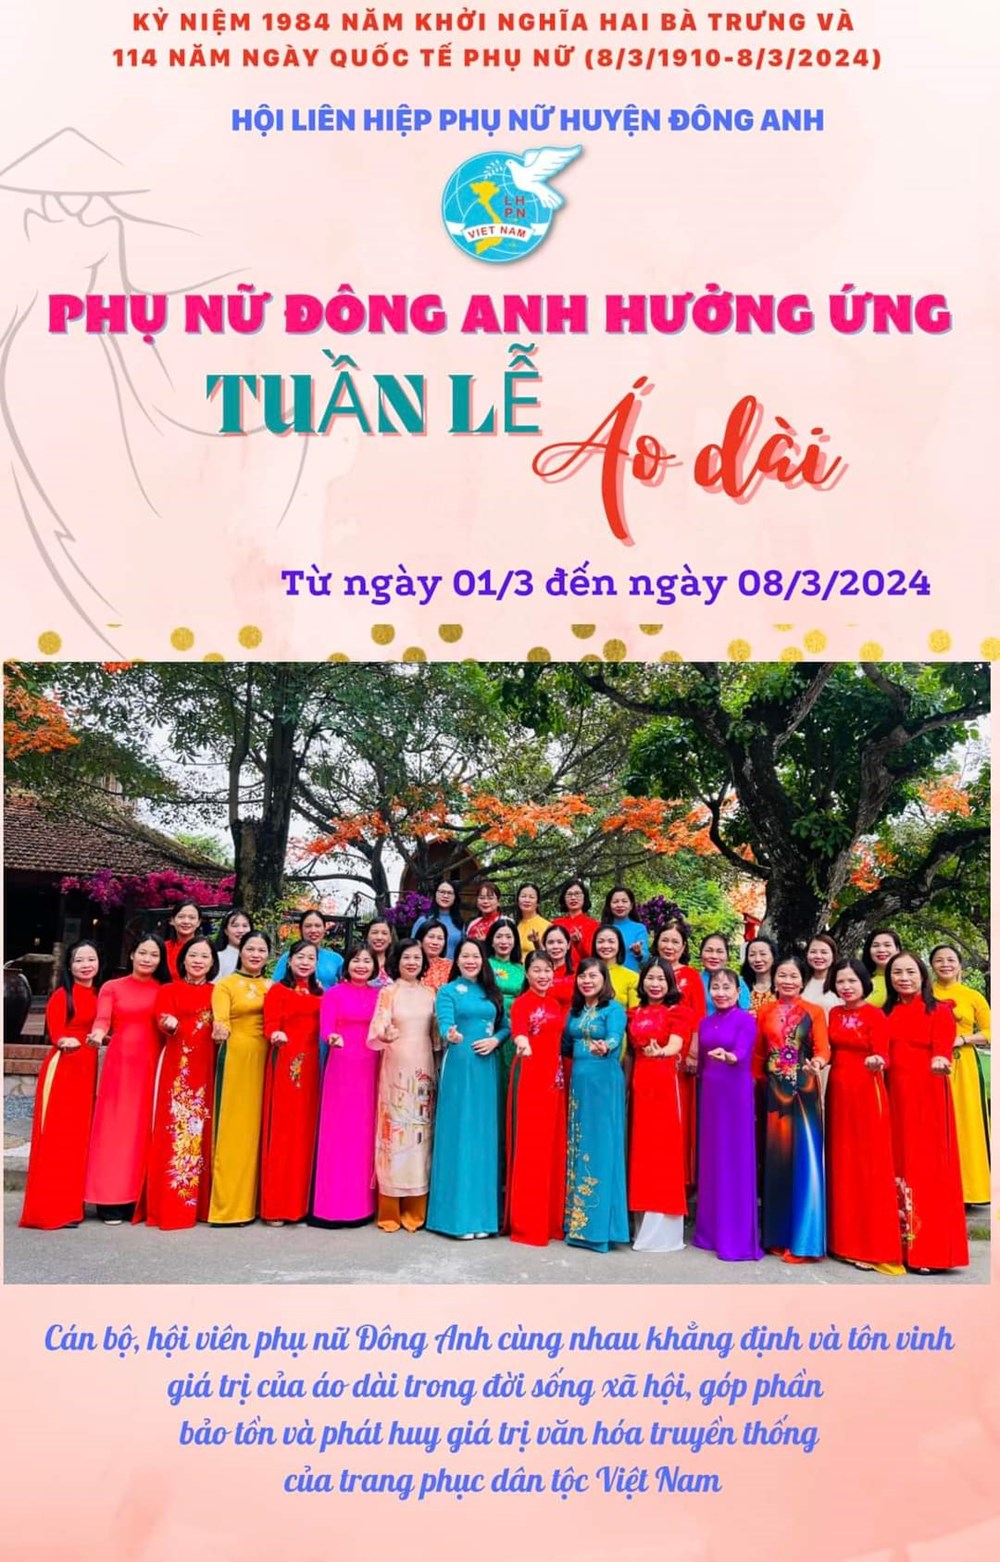 Các cấp Hội LHPN Hà Nội: Tự hào tôn vinh áo dài trong “Tuần lễ áo dài” năm 2024 - ảnh 10